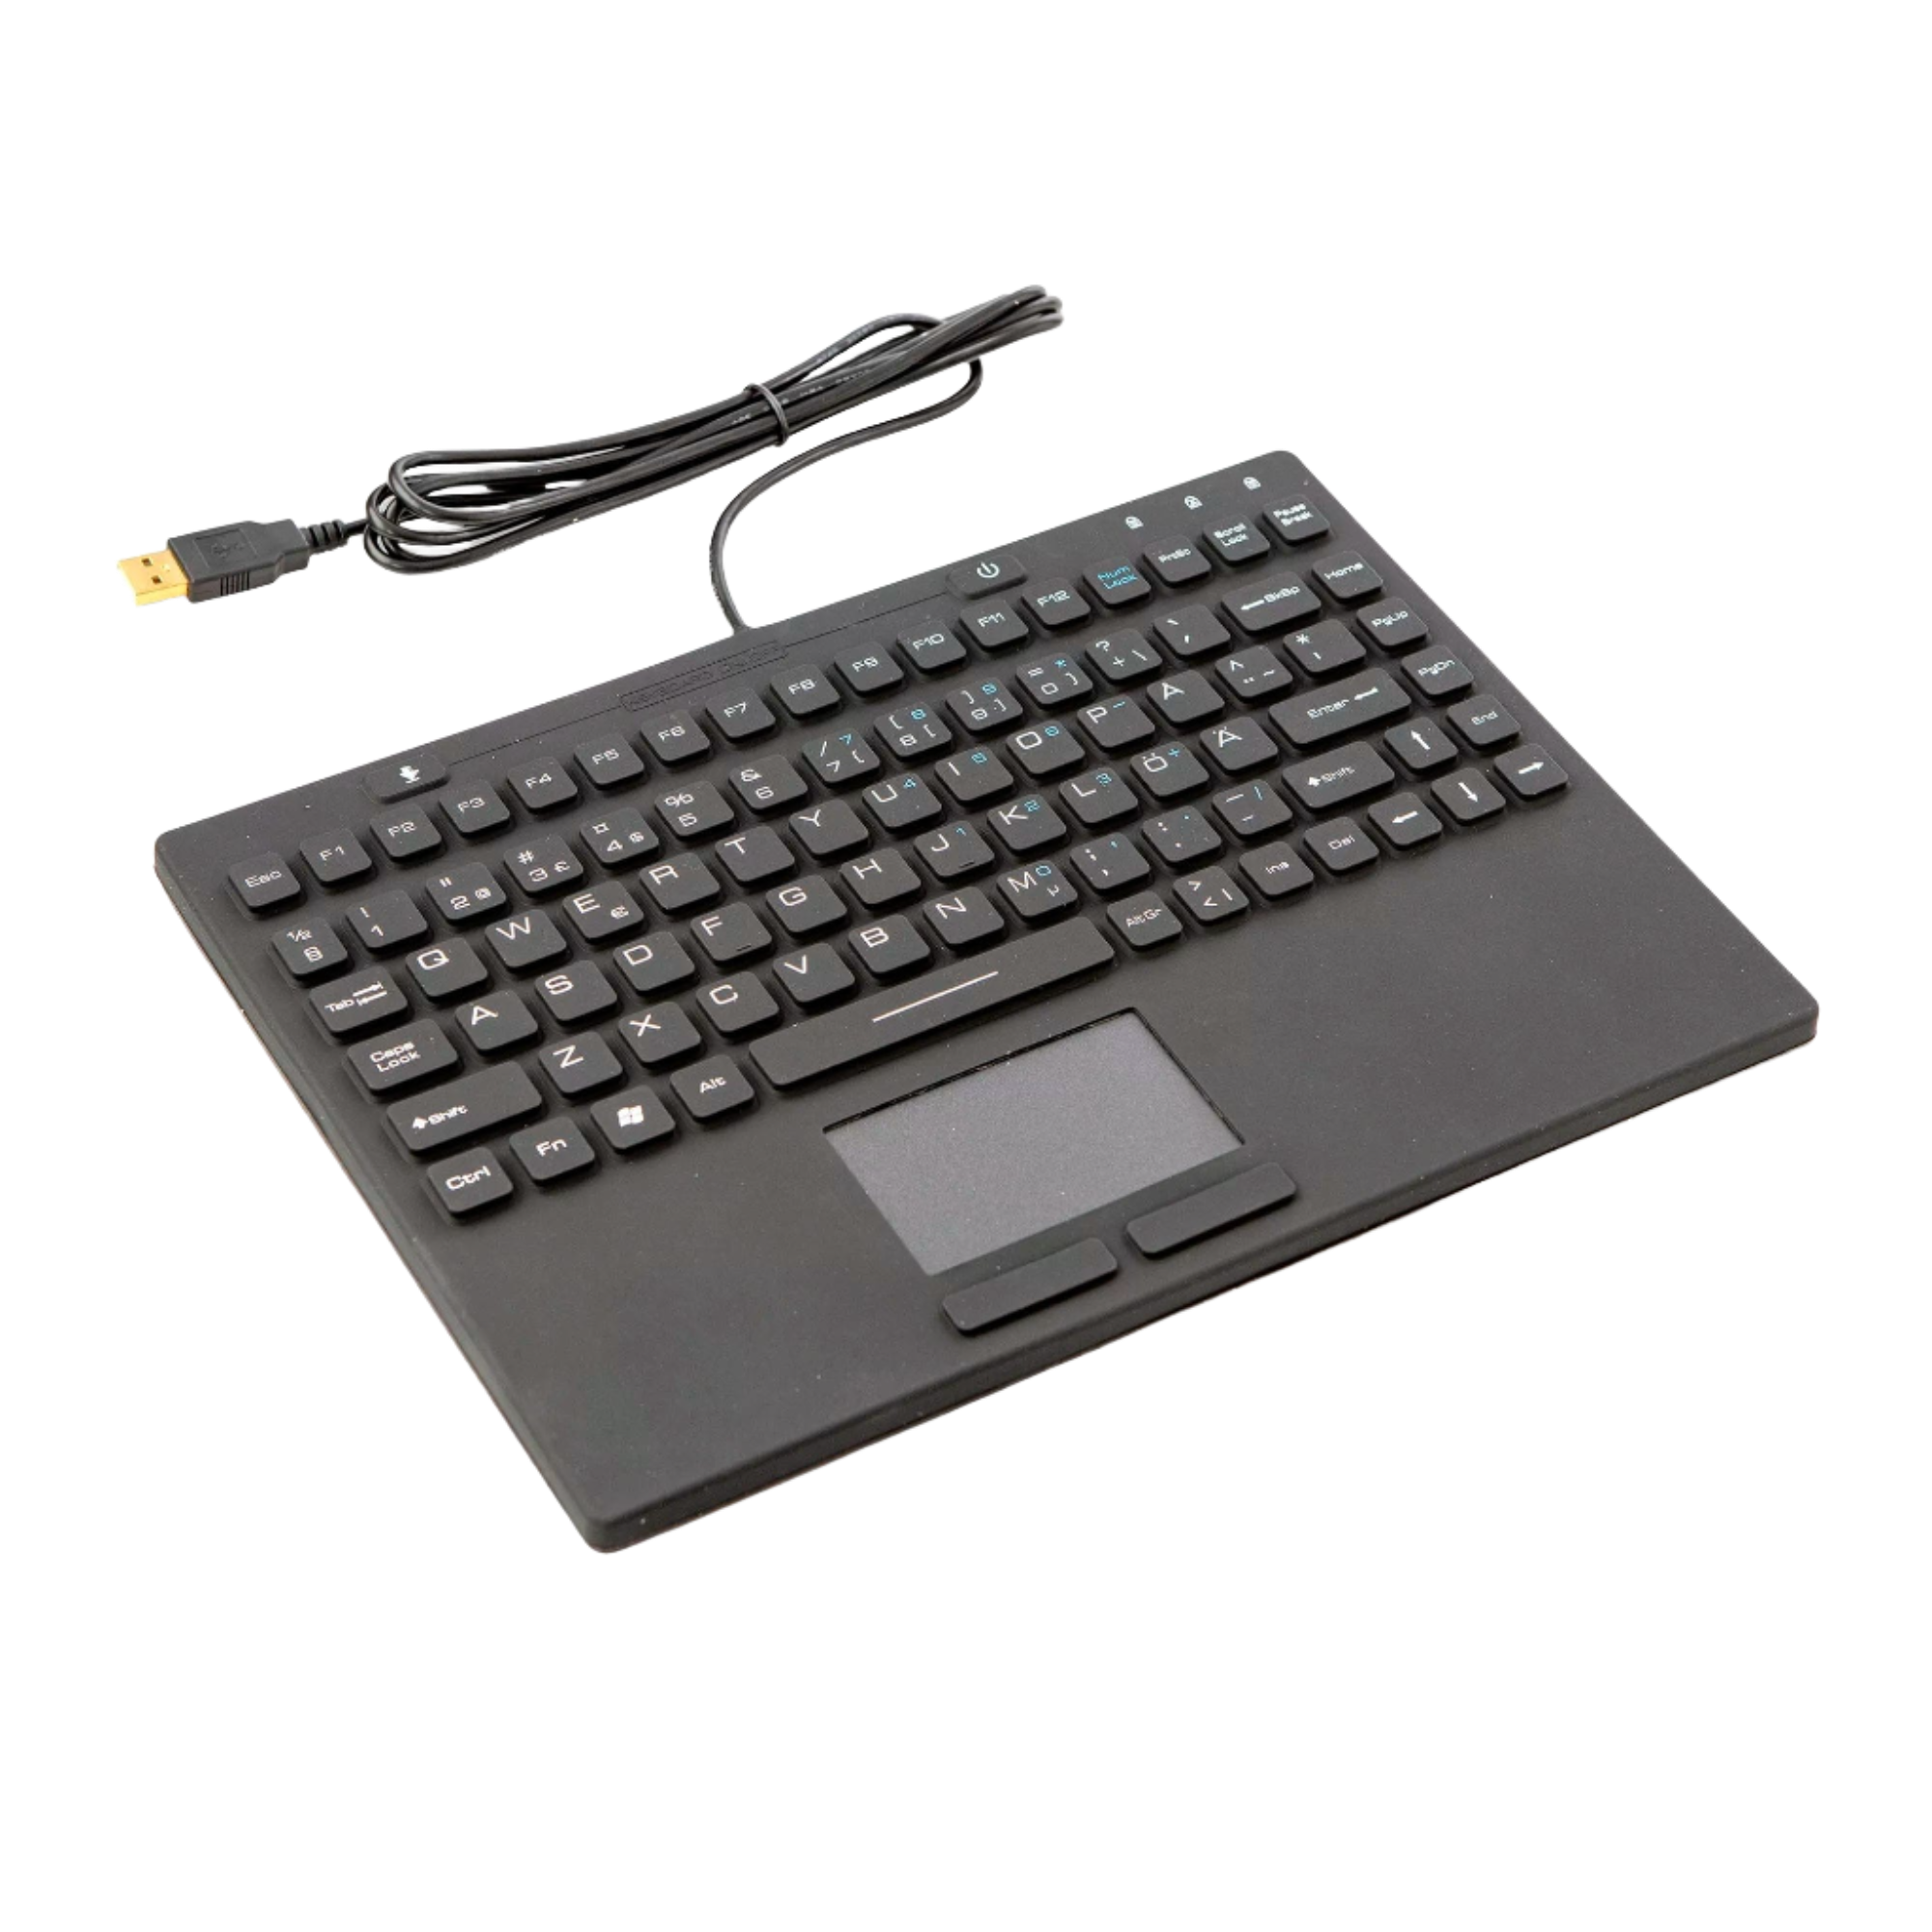 Keyboard Slim touch, waterproof